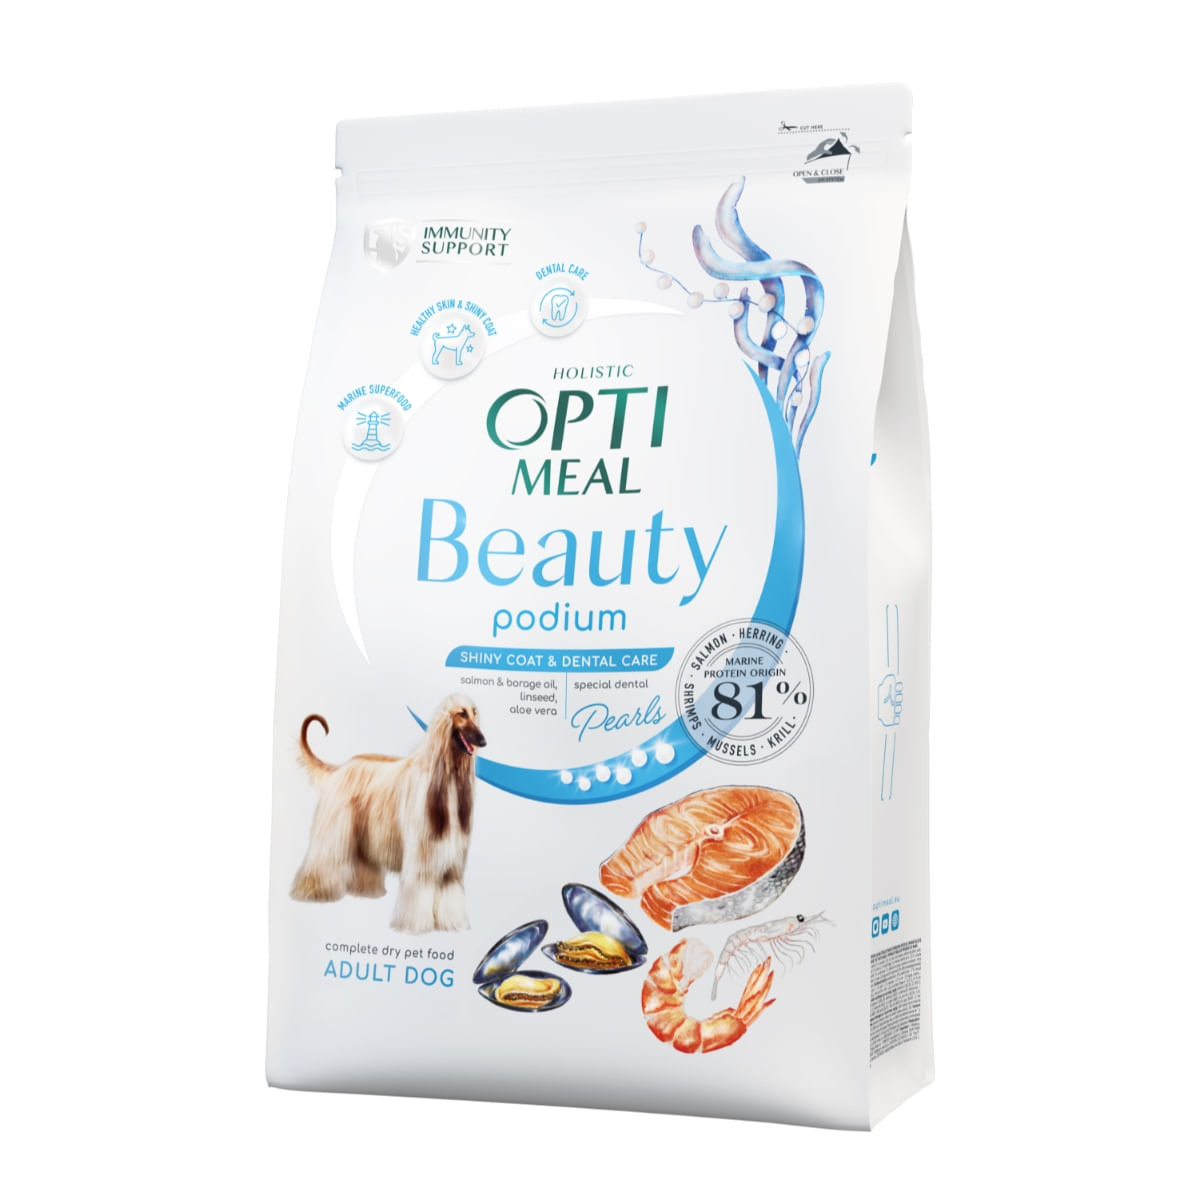 OPTIMEAL Beauty Podium, Fructe de mare, hrană uscată câini, piele și blană, sensibilităţi dentare OPTIMEAL Beauty Podium, XS-XL, Fructe de Mare, hrană uscată câini, piele & blană, sensibilități dentare, 1.5kg 1.5kg